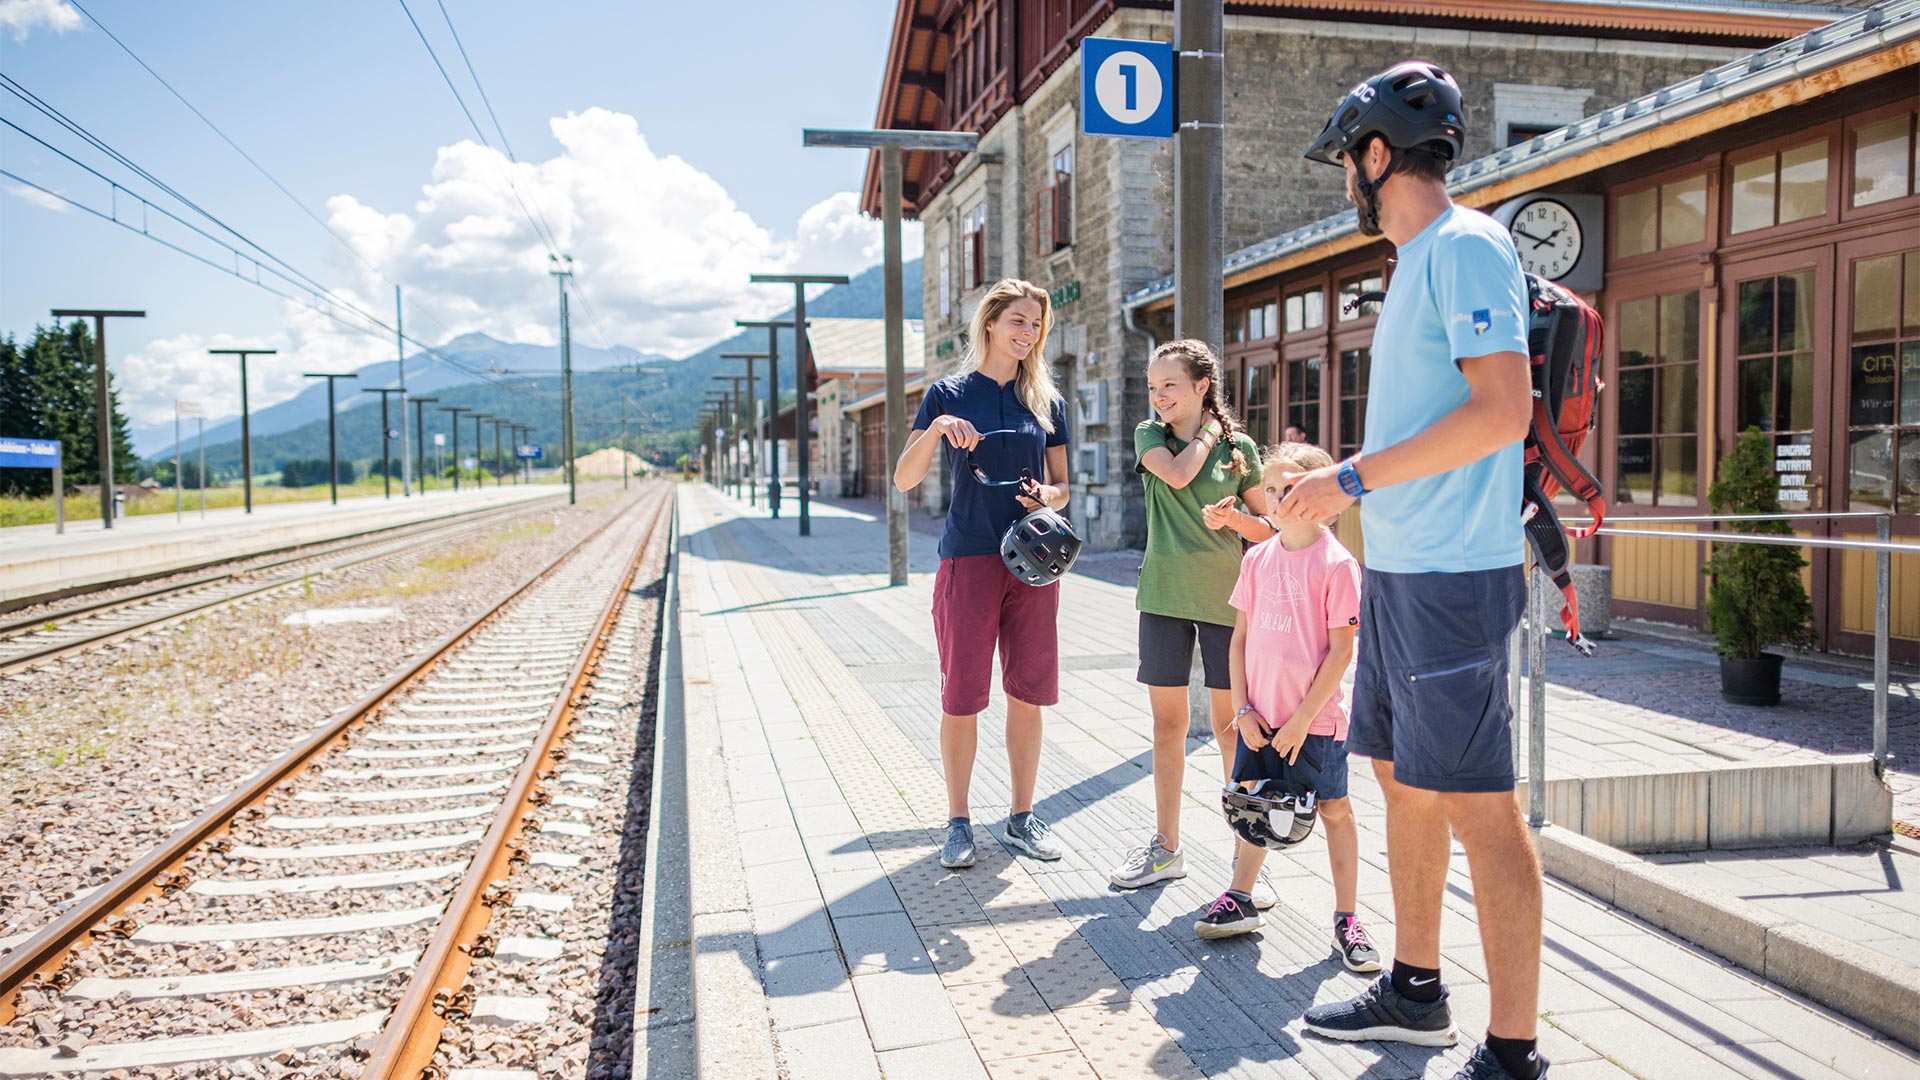 Una famiglia, che ha terminato le attività in bicicletta, si trova nella stazione ferroviaria  e aspetta l'arrivo del treno.